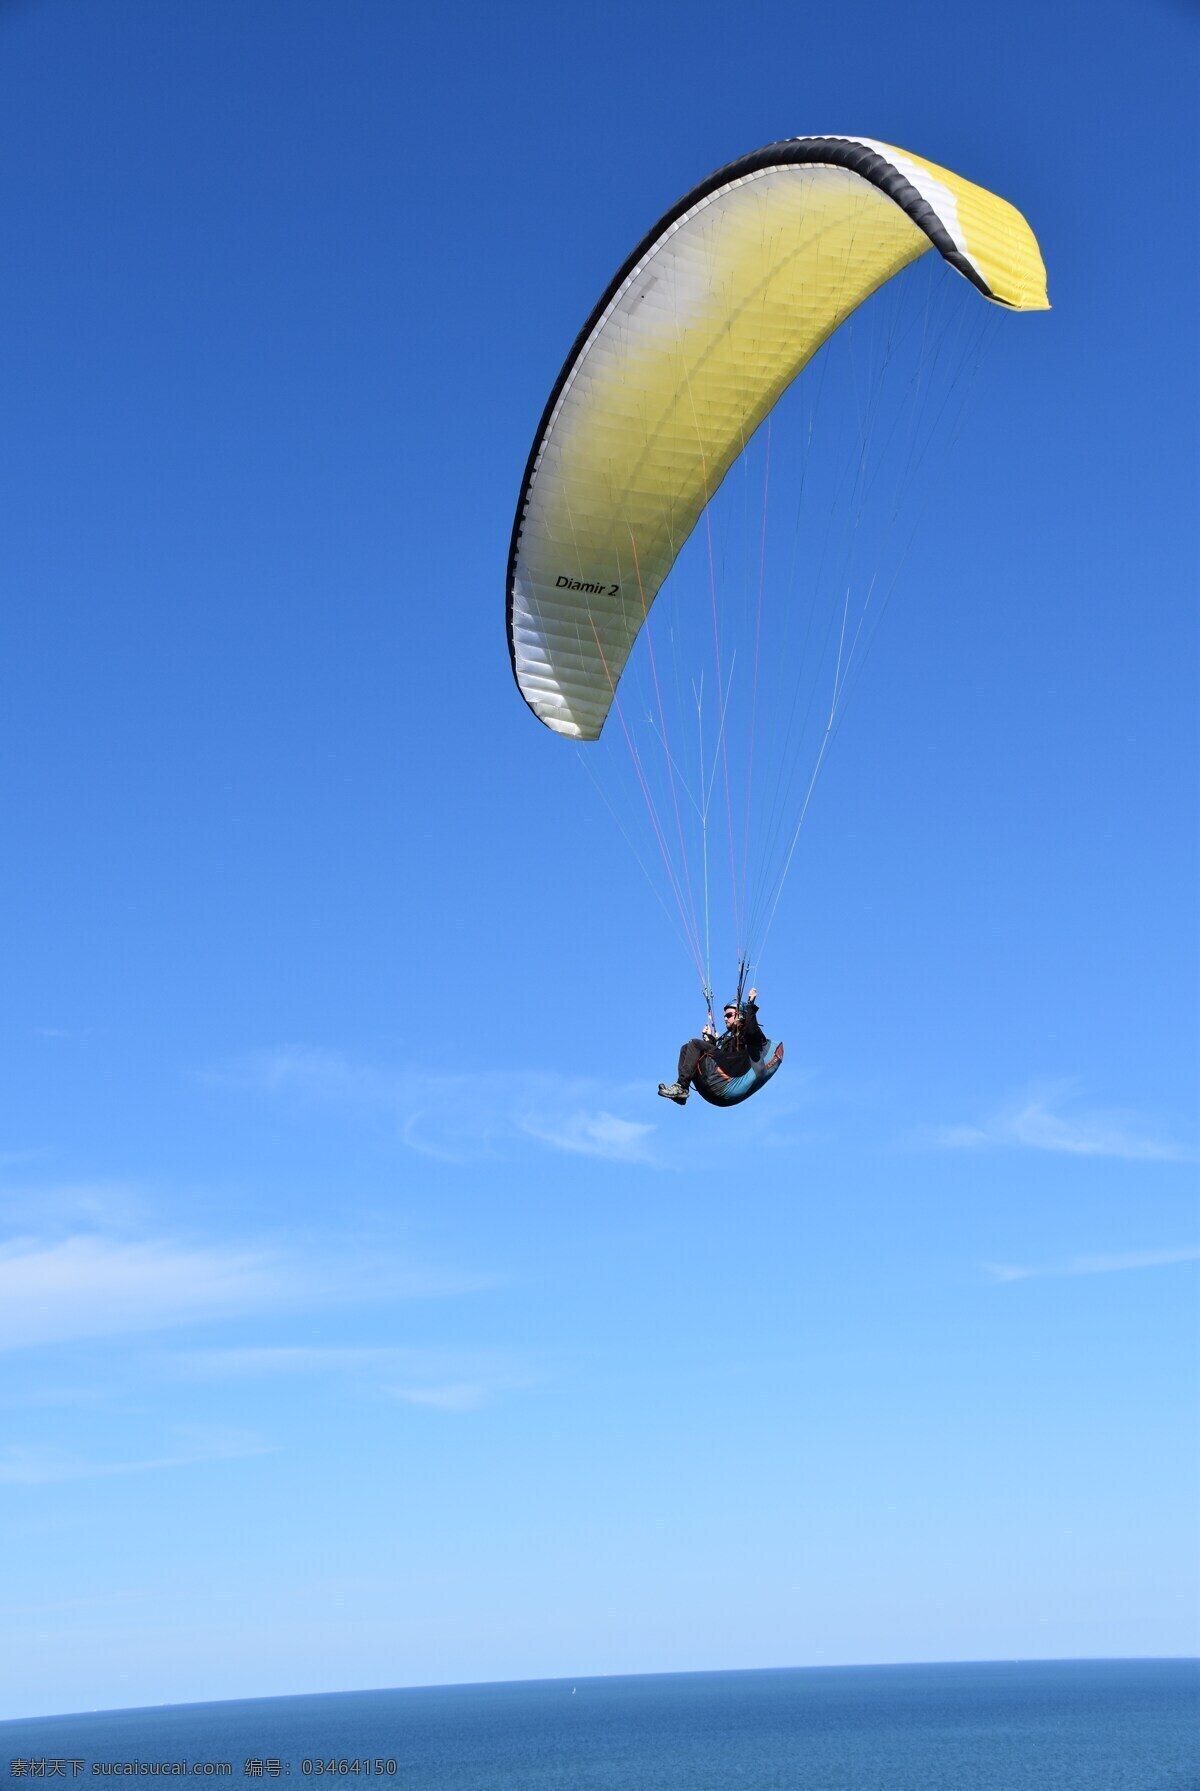 天空 滑翔伞 运动 极端 虽然 夏天 山 卡通 自由 关于 冒险 跳伞 高飞 空气 飞 天性 旅行 蓝色 景观 户外活动 大海 风 滑翔机滑翔机 人 地平线 挂 滑动 乐趣 活动 动作 土地 航班 兴奋 岘港 越南 自然景观 自然风景